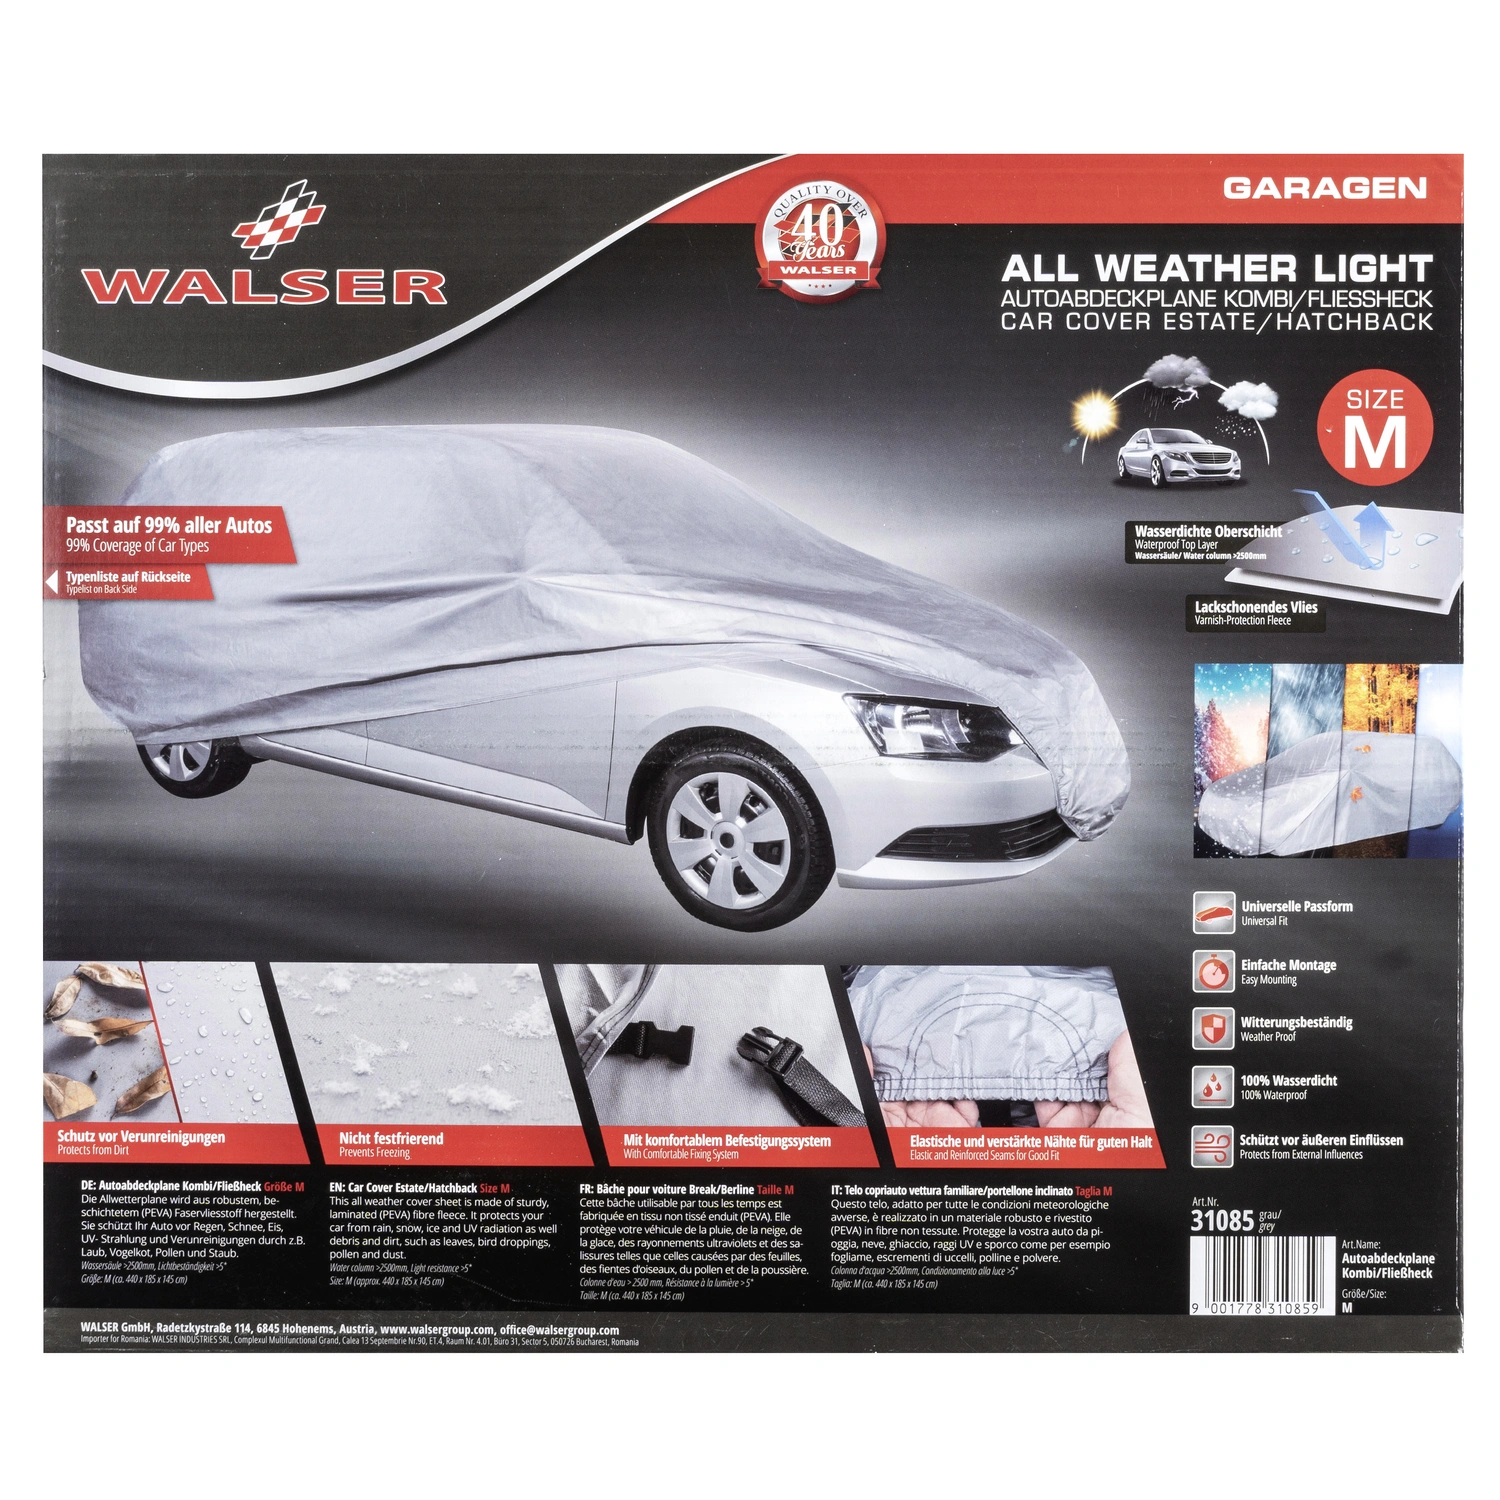 WALSER Autoabdeckplane »All Weather light«, für PKWs, Stärke: 1,2 mm